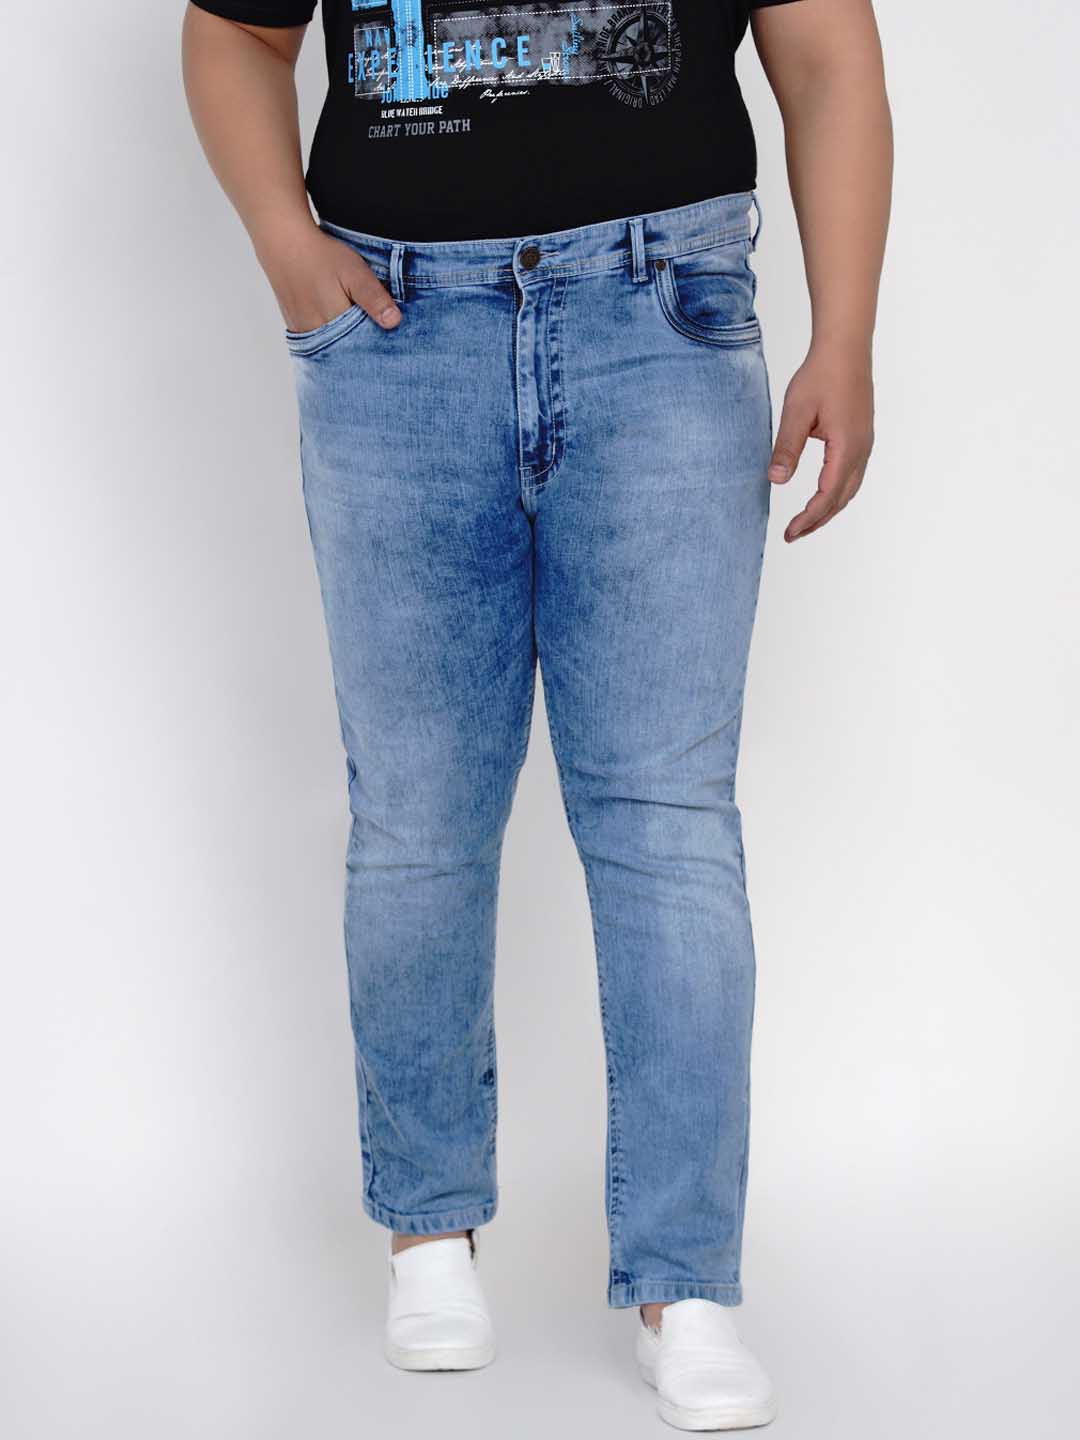 bottomwear/jeans/JPJ12128/jpj12128-1.jpg